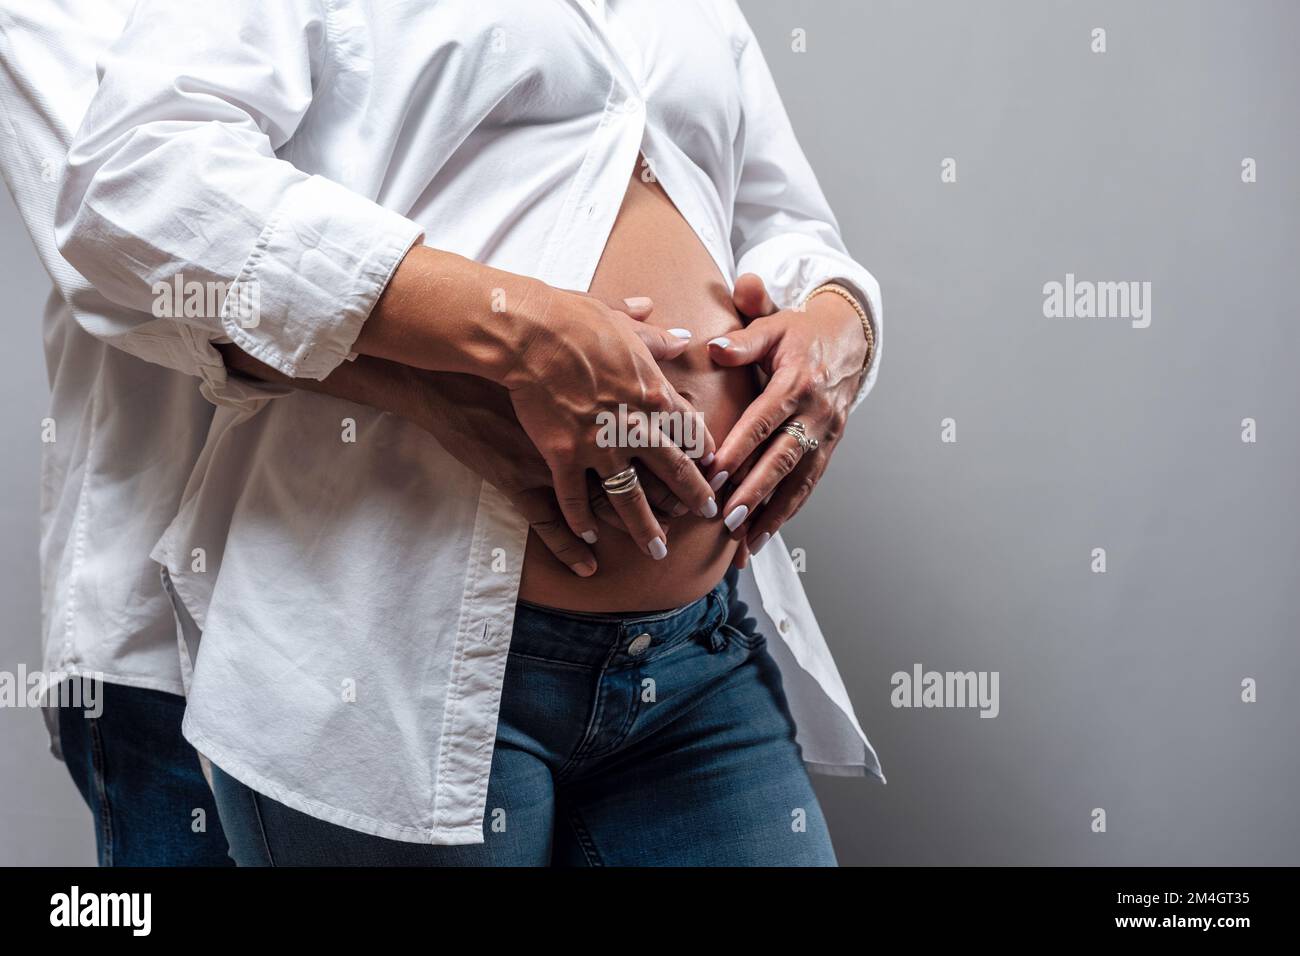 Les mains des hommes et des femmes épousent le ventre d'une femme enceinte. Grossesse, maternité, préparation et concept d'attente. Banque D'Images